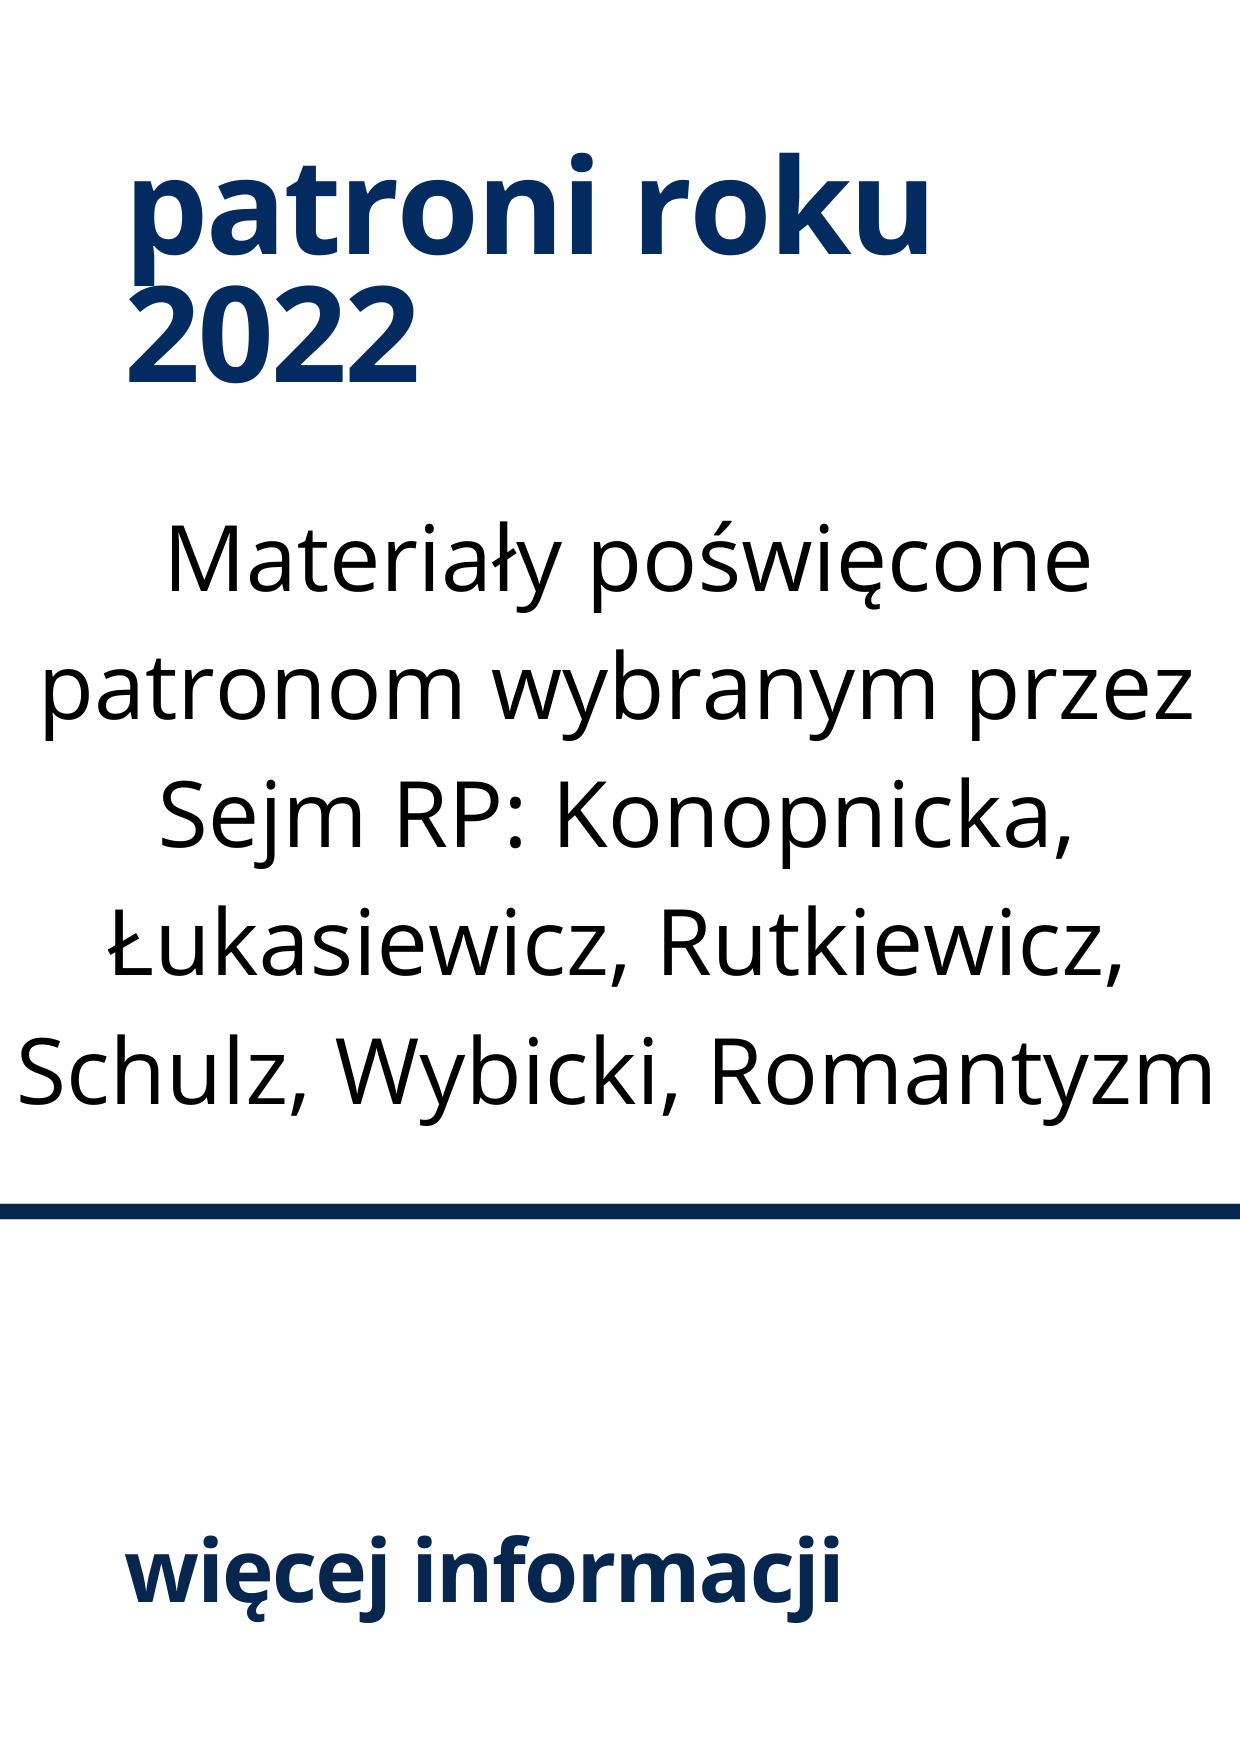 Patroni Roku 2022: materiały informacyjne i edukacyjne